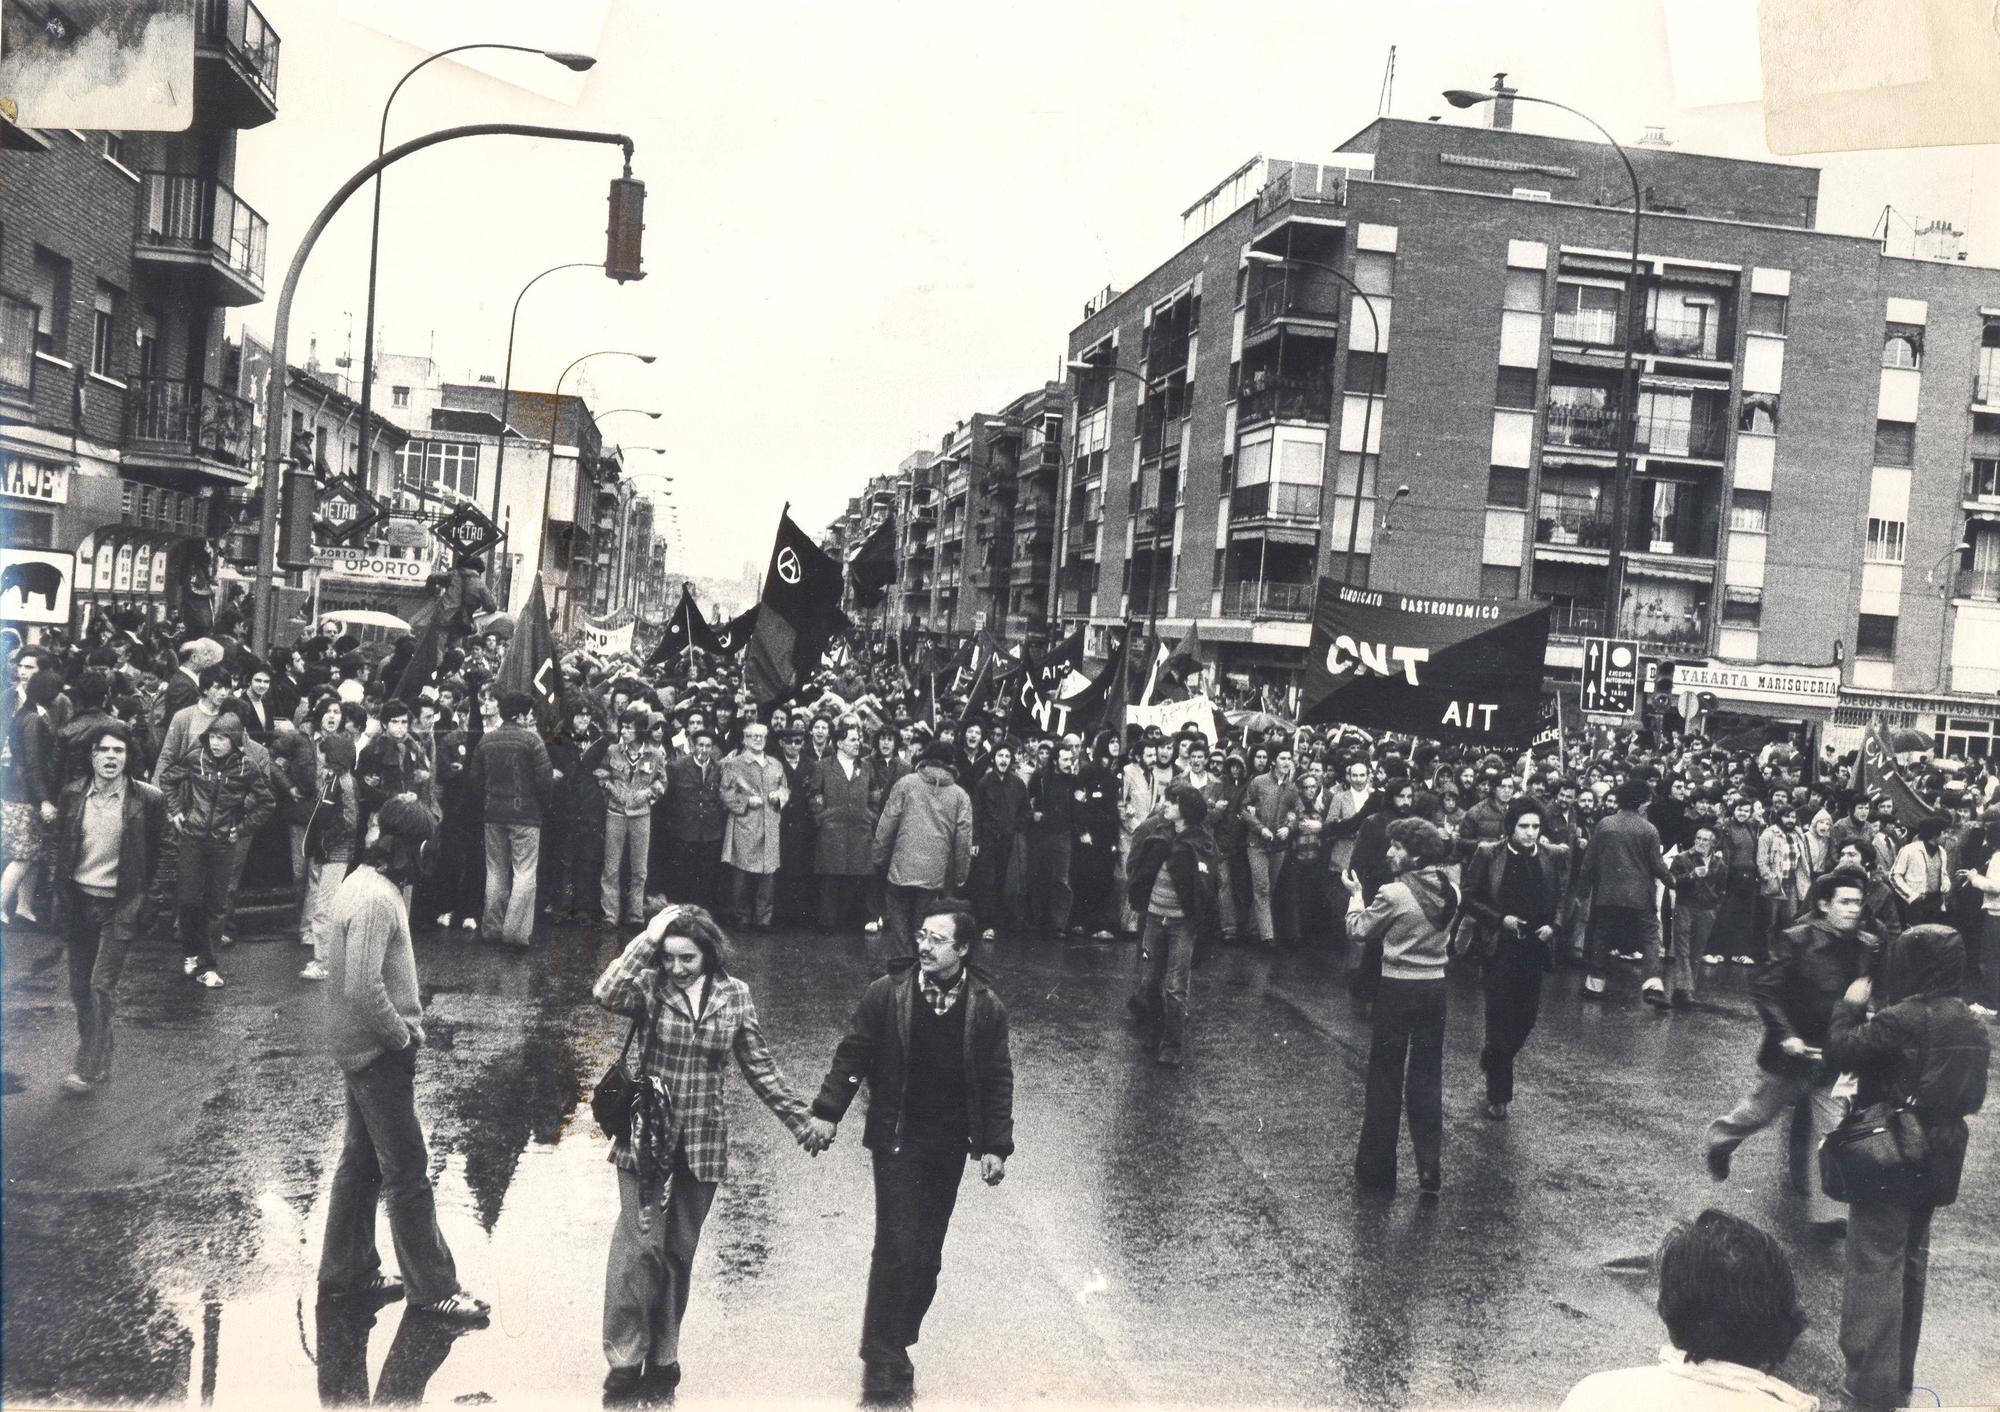 La manifestación de CNT en Madrid el 1 de mayo de 1978 llega a la plaza de Oporto